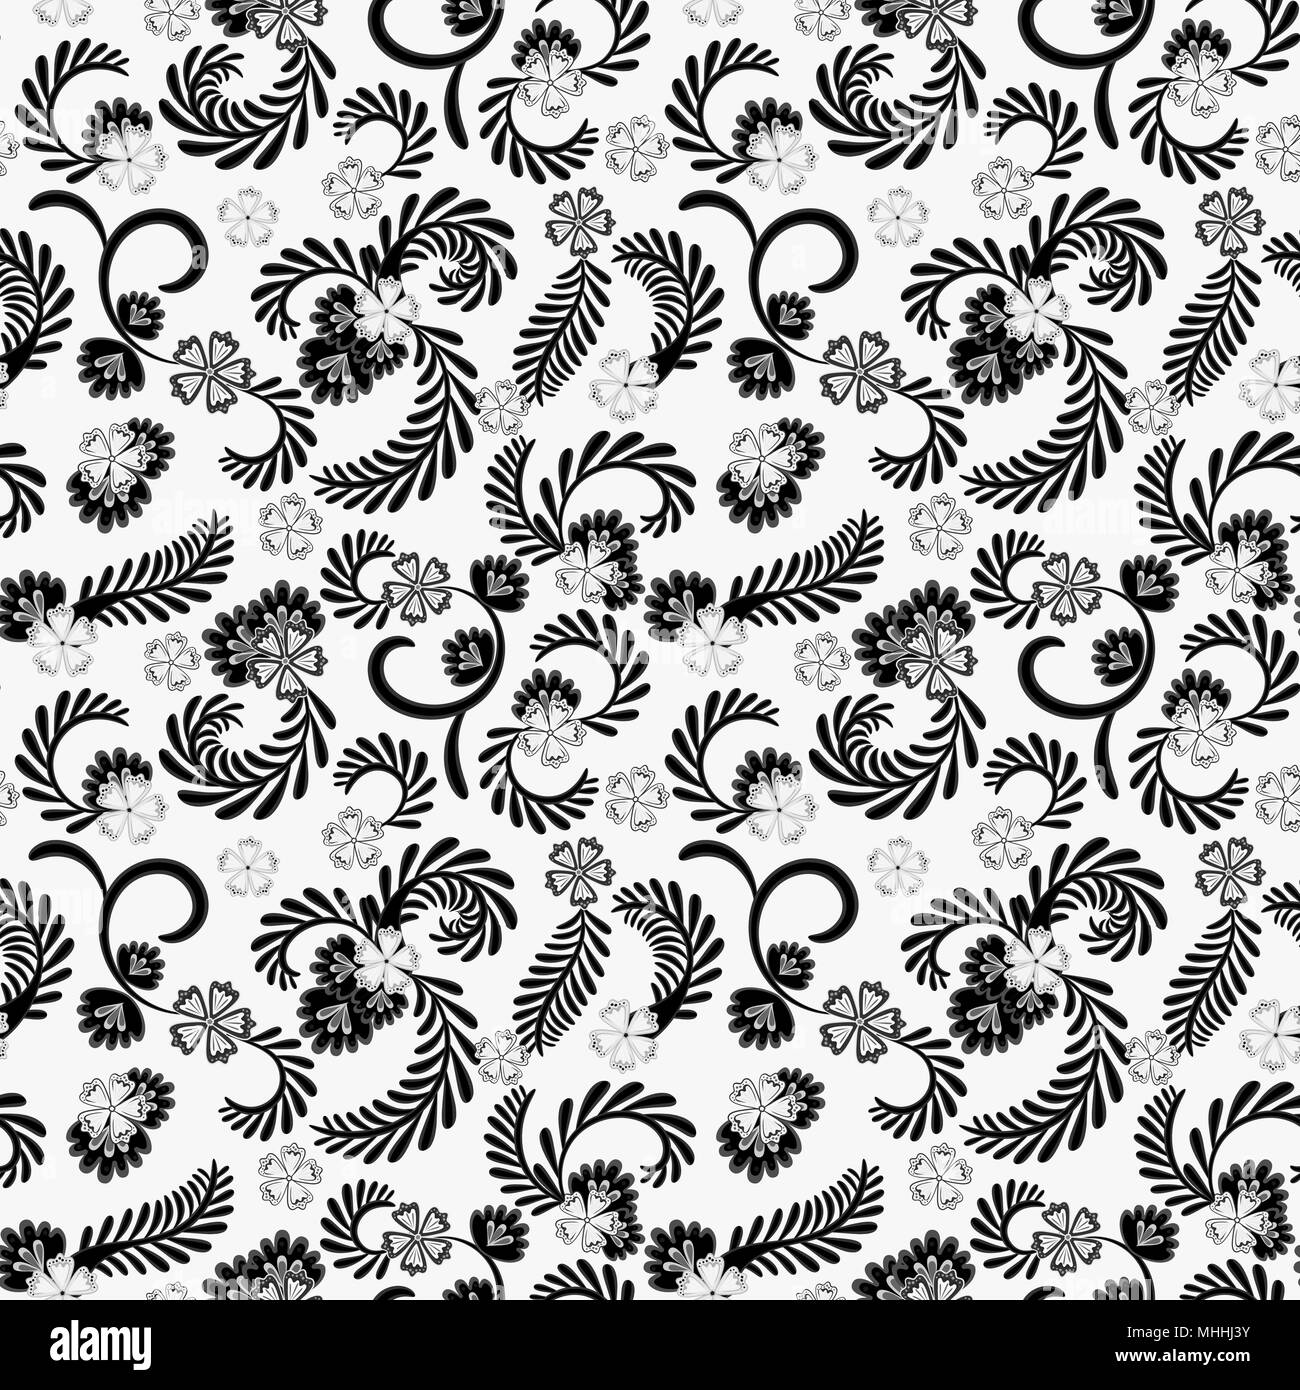 Eine einfache florale Muster, praktisch für die Bearbeitung und Malerarbeiten. Anmutige floral grau Muster auf weißem Hintergrund. Vektor. Stock Vektor